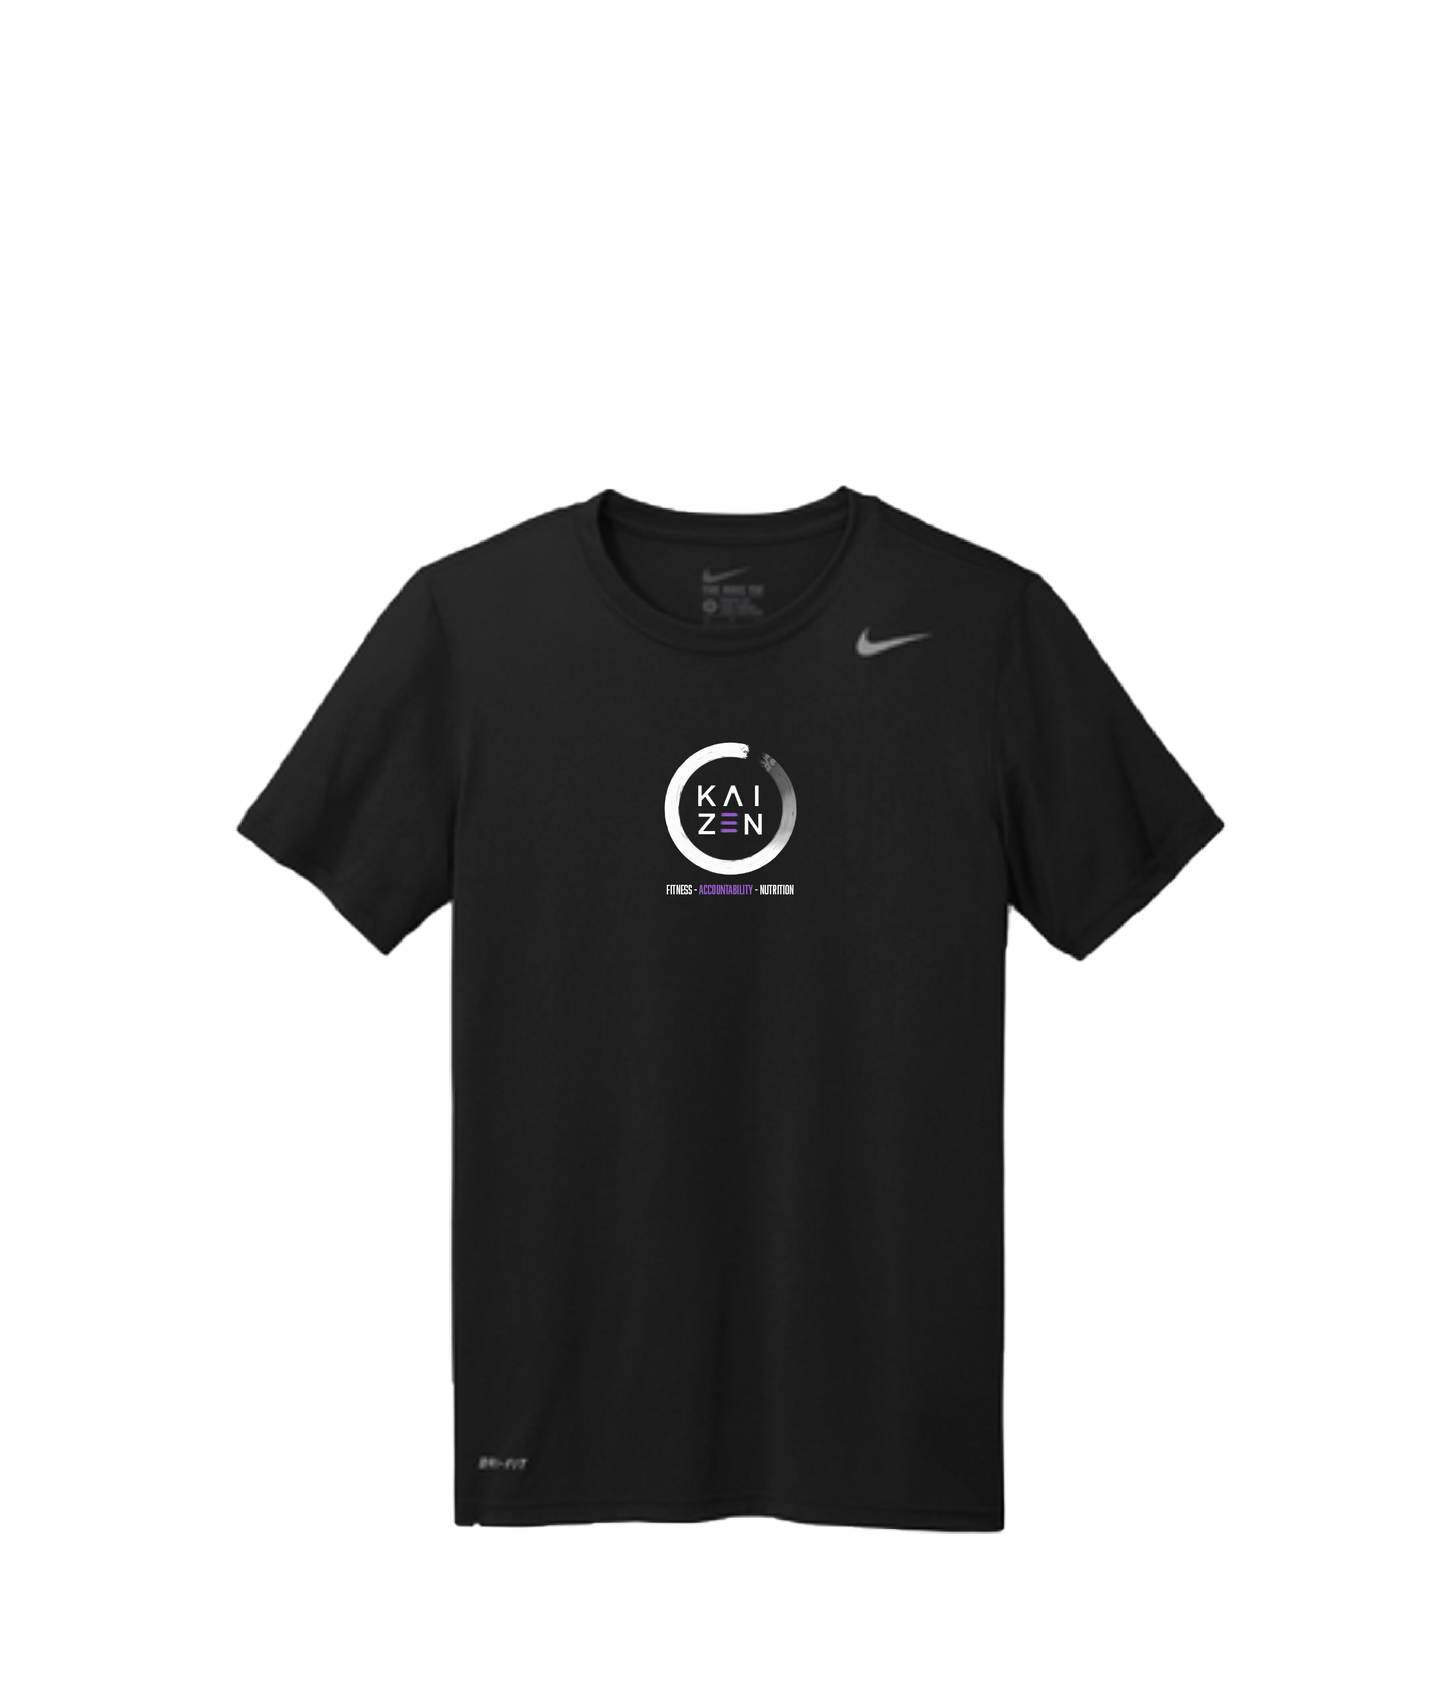 Kaizen logo shirt - Nike Teamr Legend tee